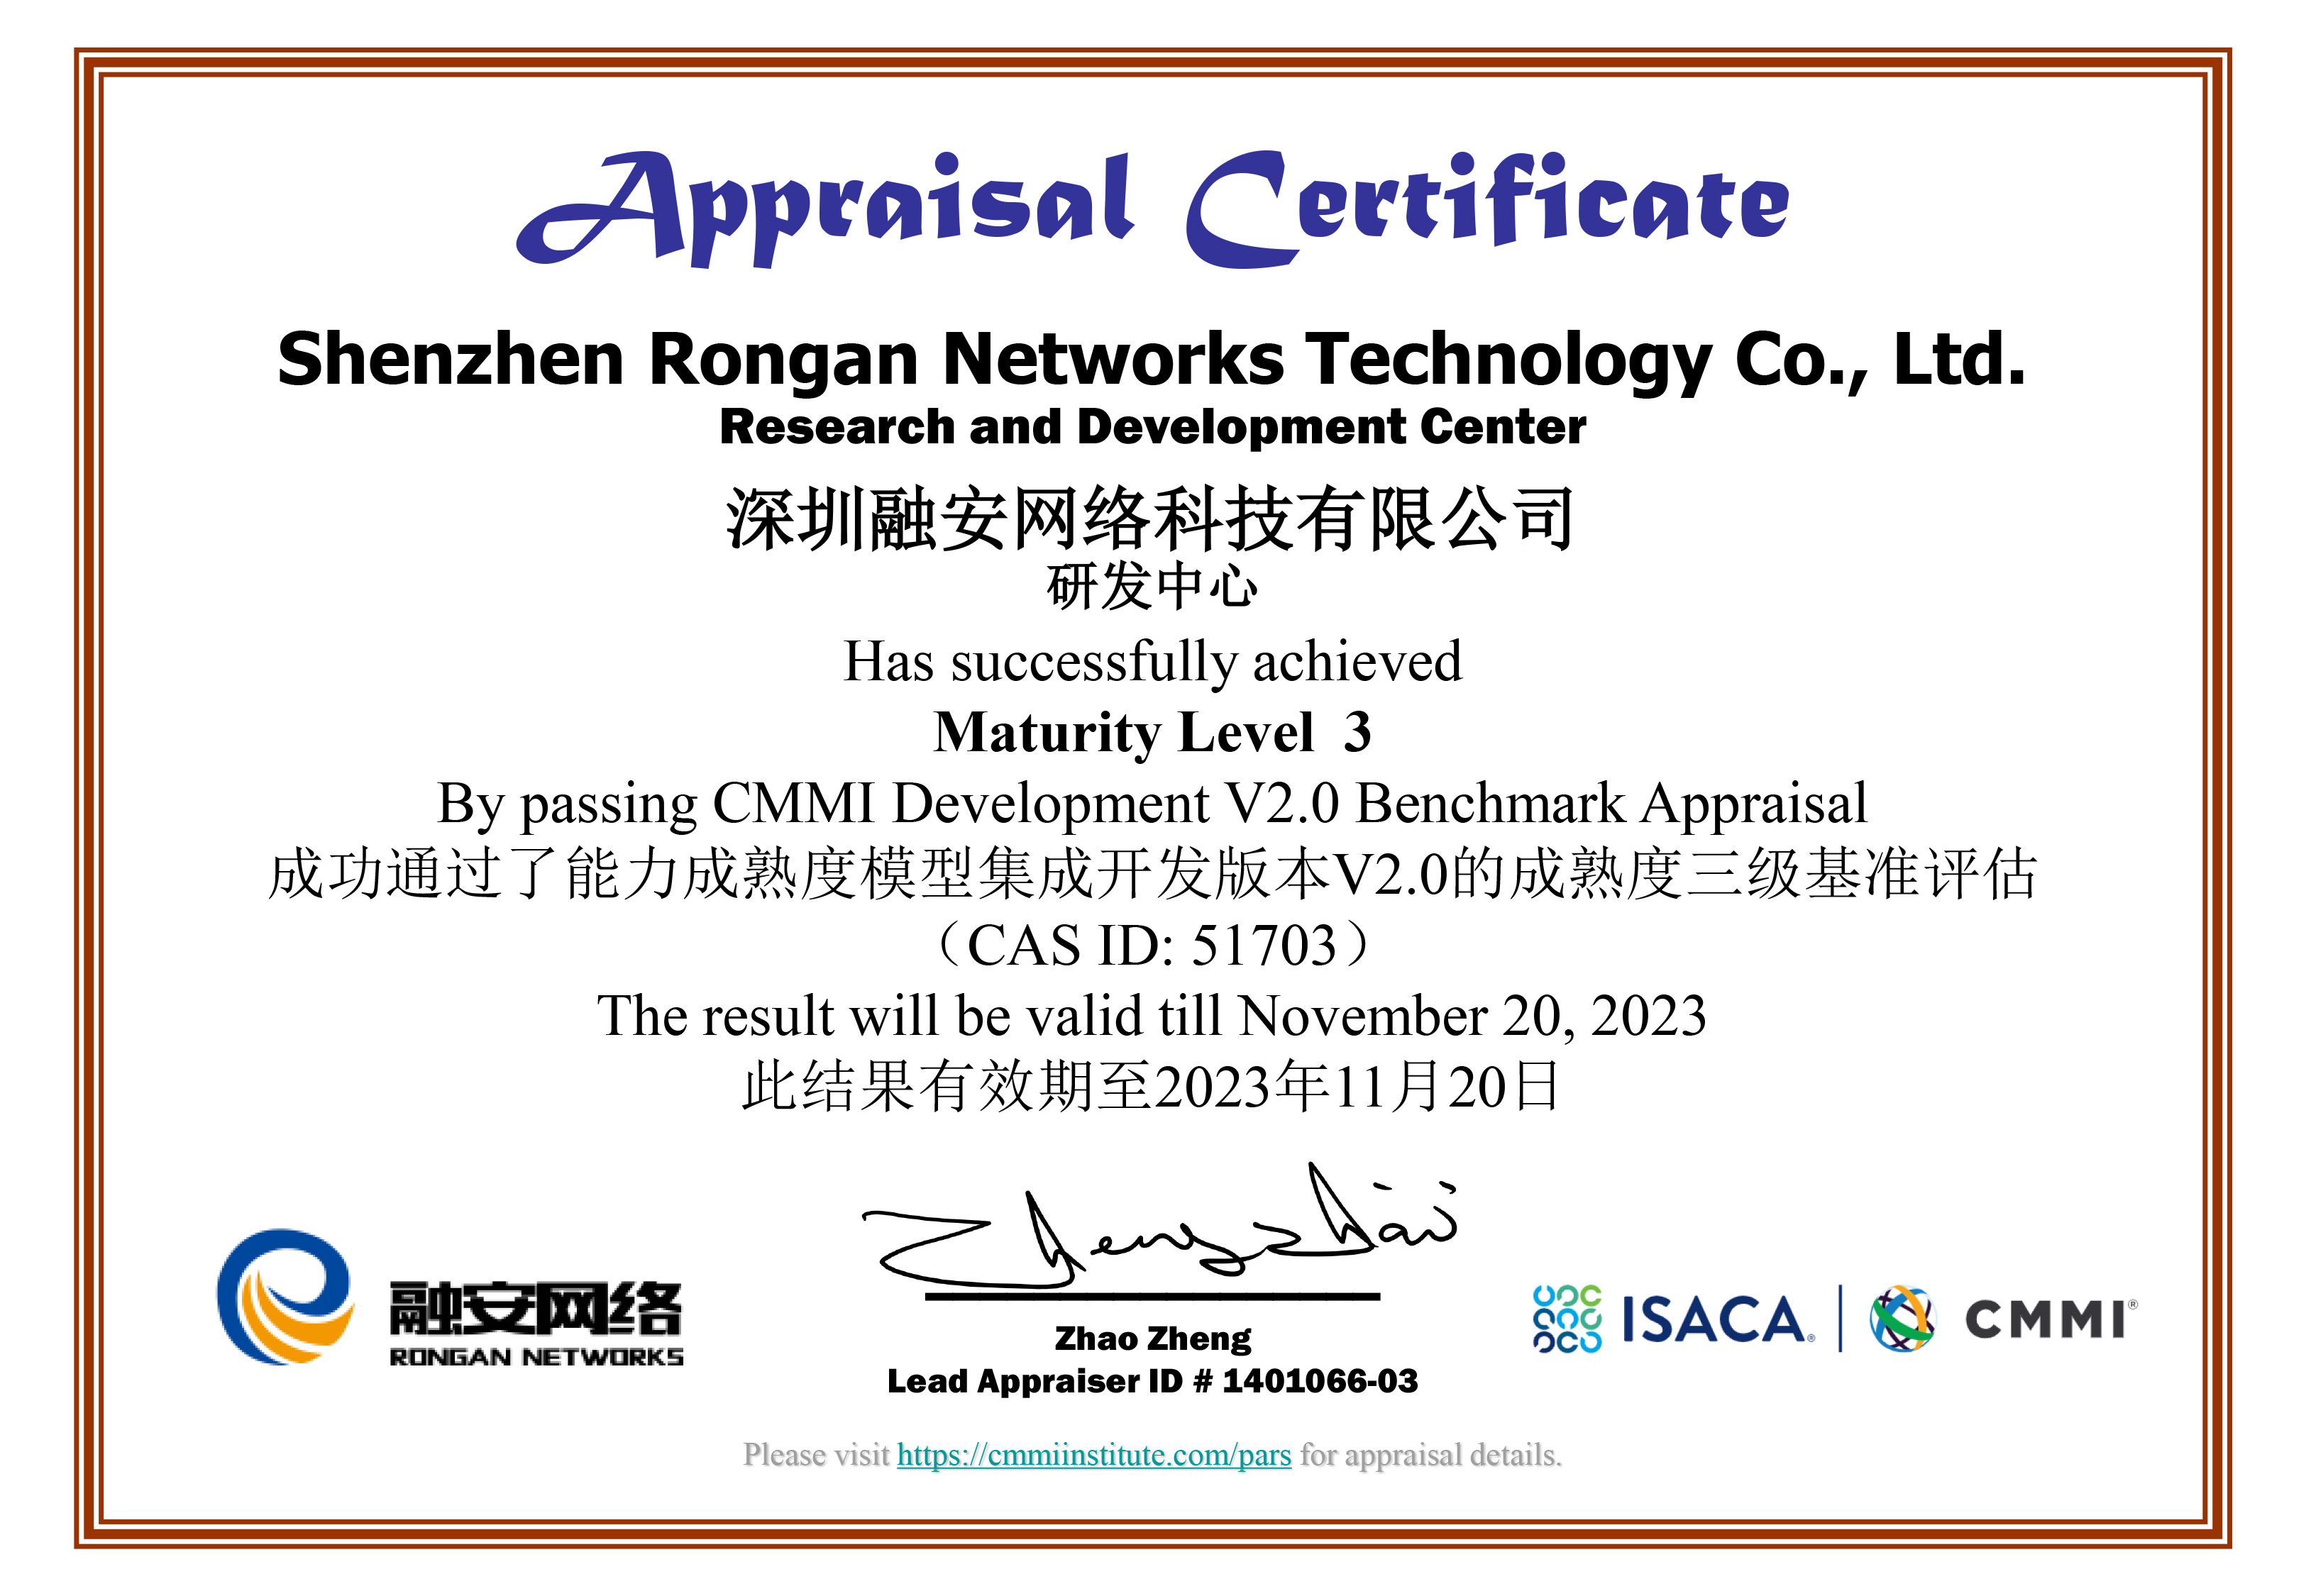 融安网络通过CMMI V2.0三级资质认证 —— 软件研发管理能力获国际权威机构认证